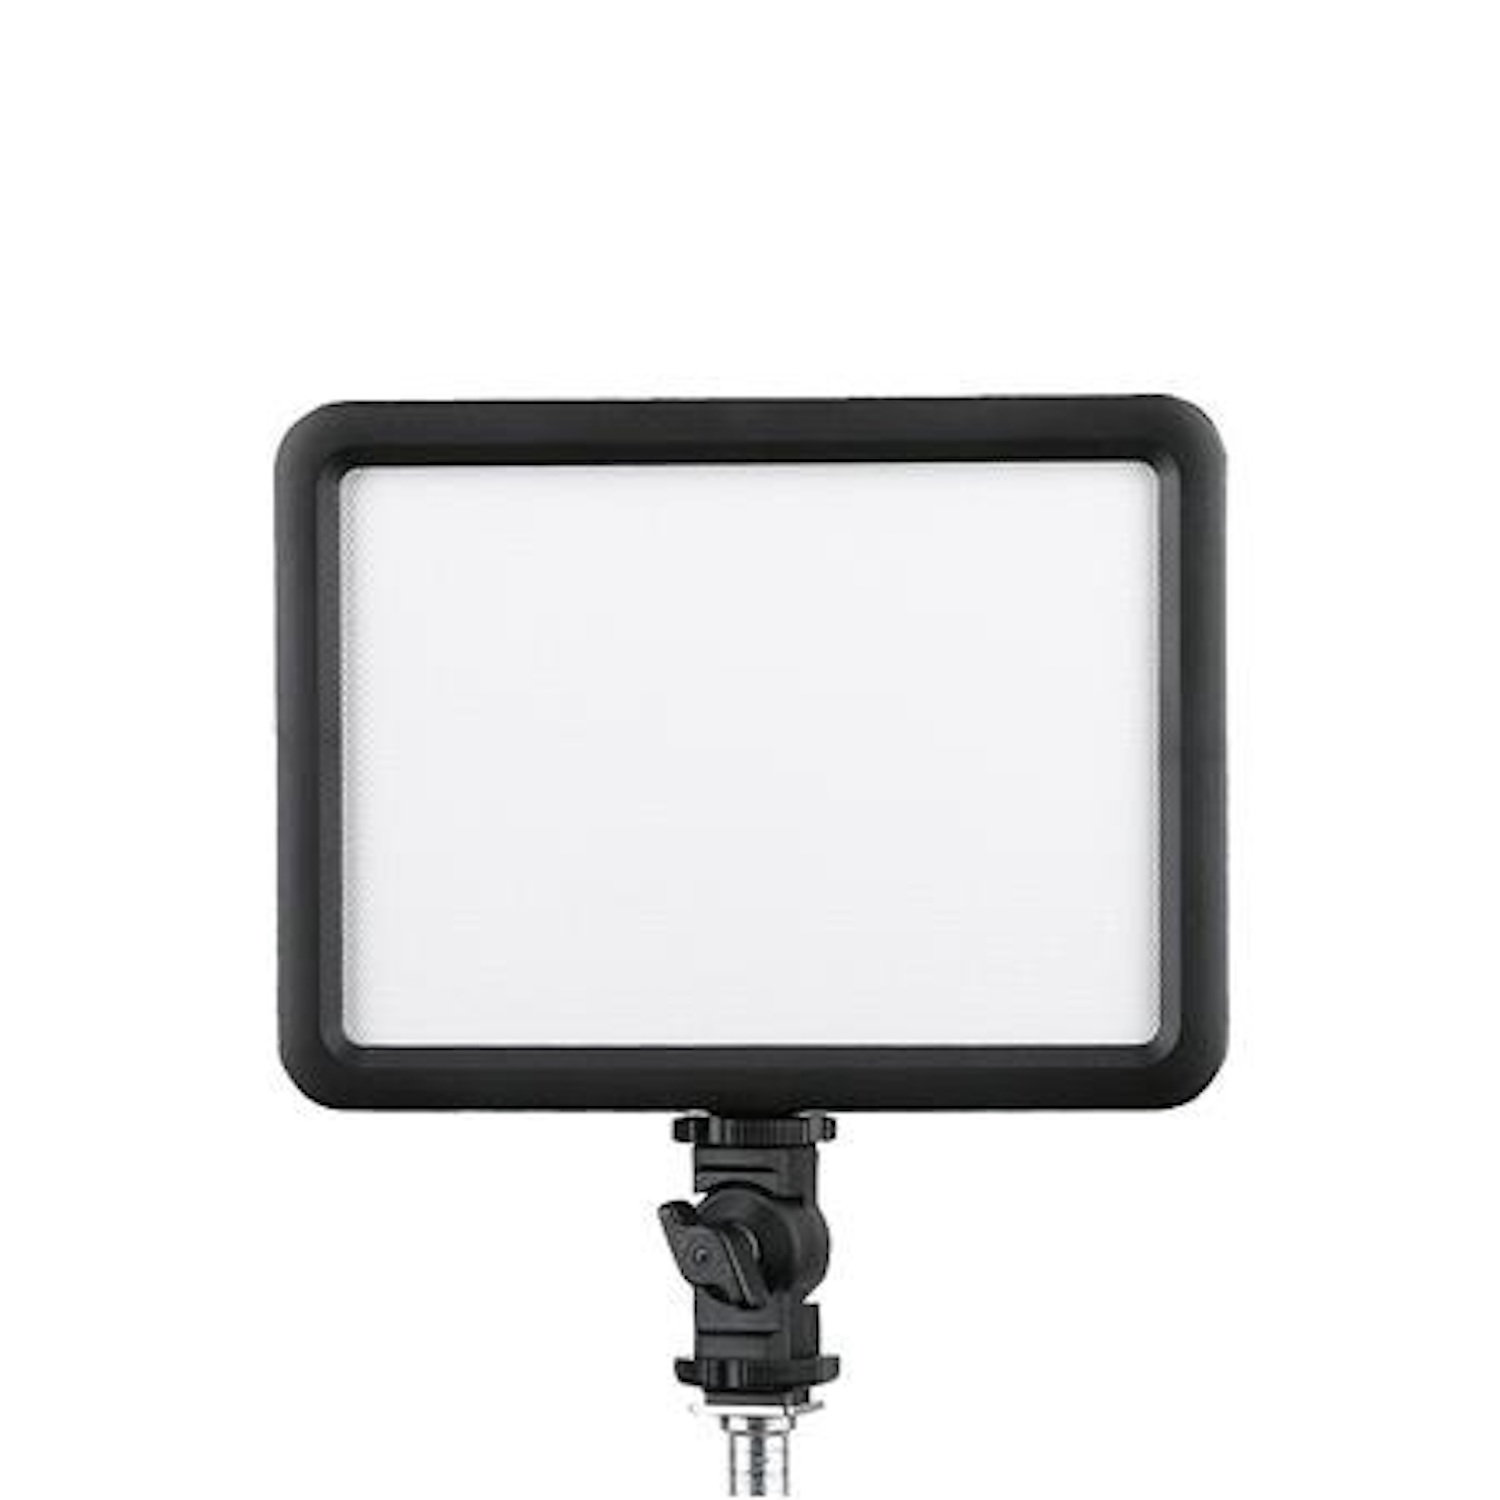 Dauerlicht für P120C Video Universal GODOX LED Licht